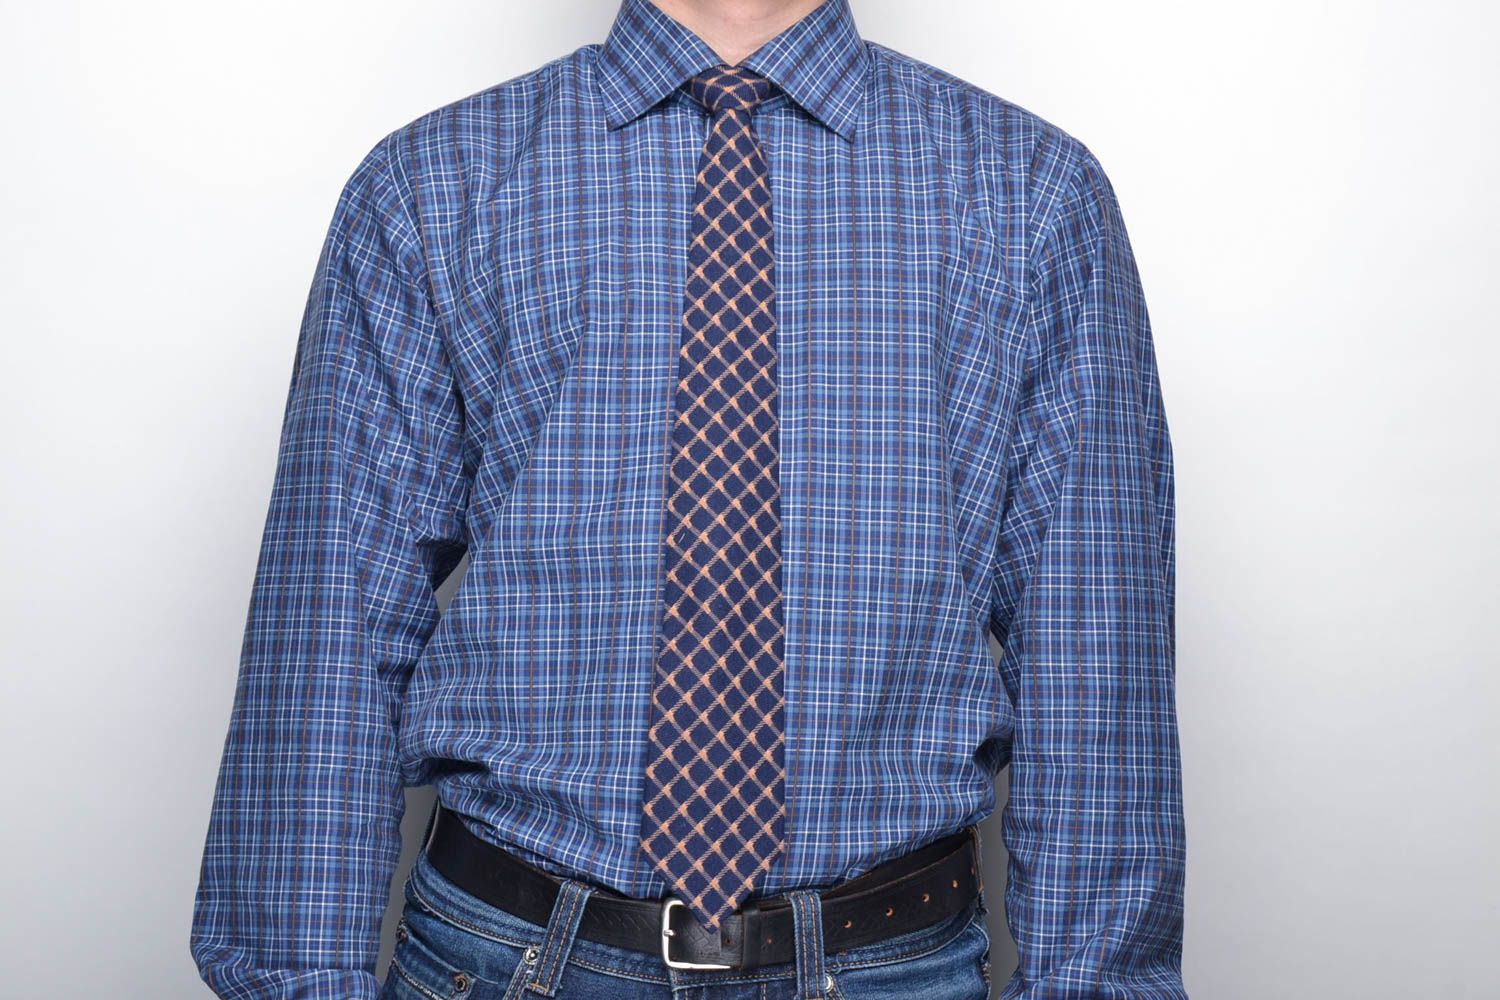 Cravate à carreaux bleu foncé faite main photo 2